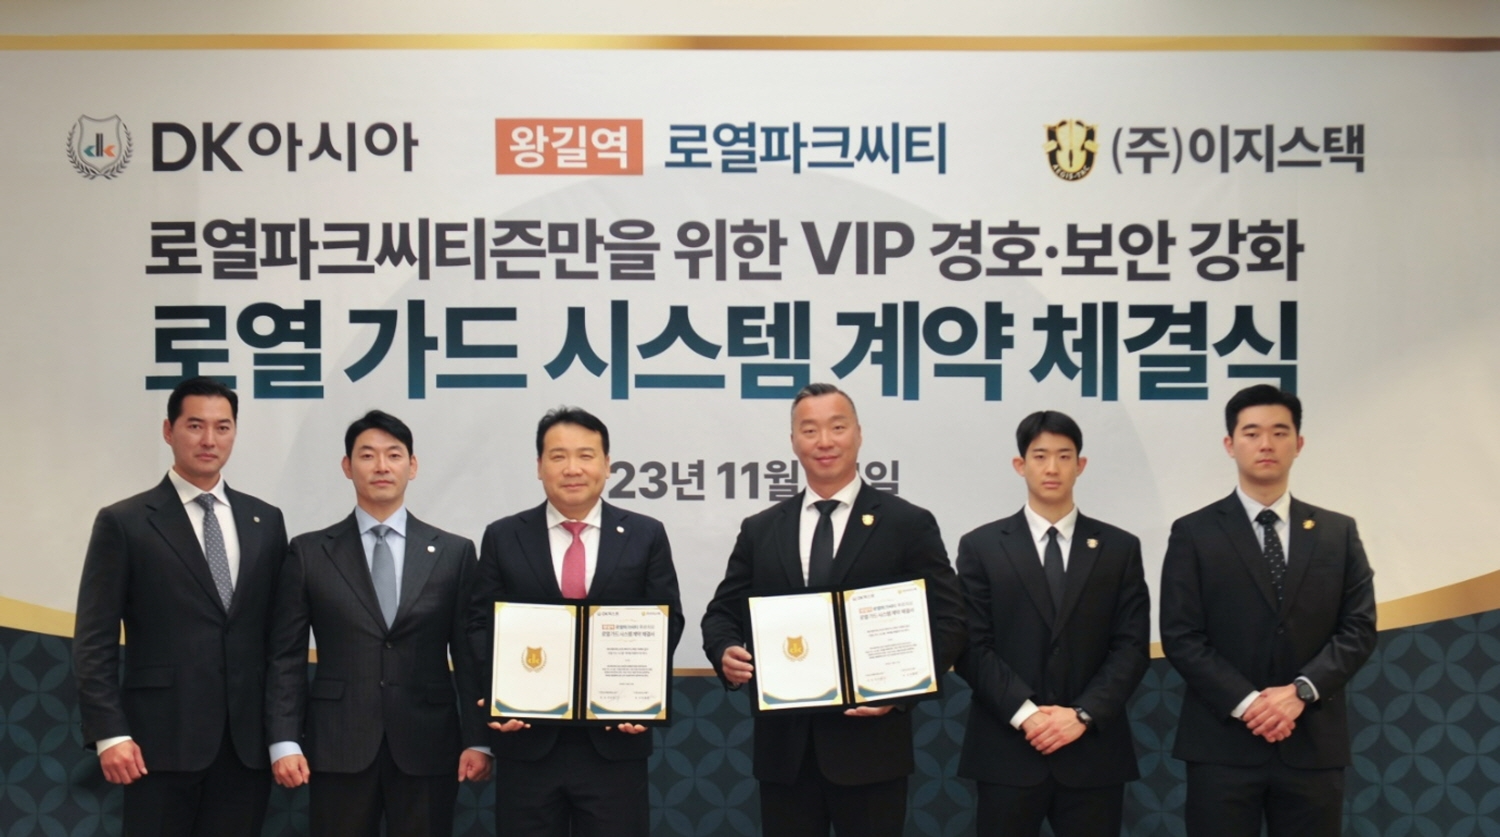 (가운데 왼쪽부터) 김효종 DK아시아 대표이사 부사장, 최종찬 이지스택 대표가 로열 가드 시스템 계약을 체결하고 기념사진을 촬영하고 있다.(사진=DK아시아)